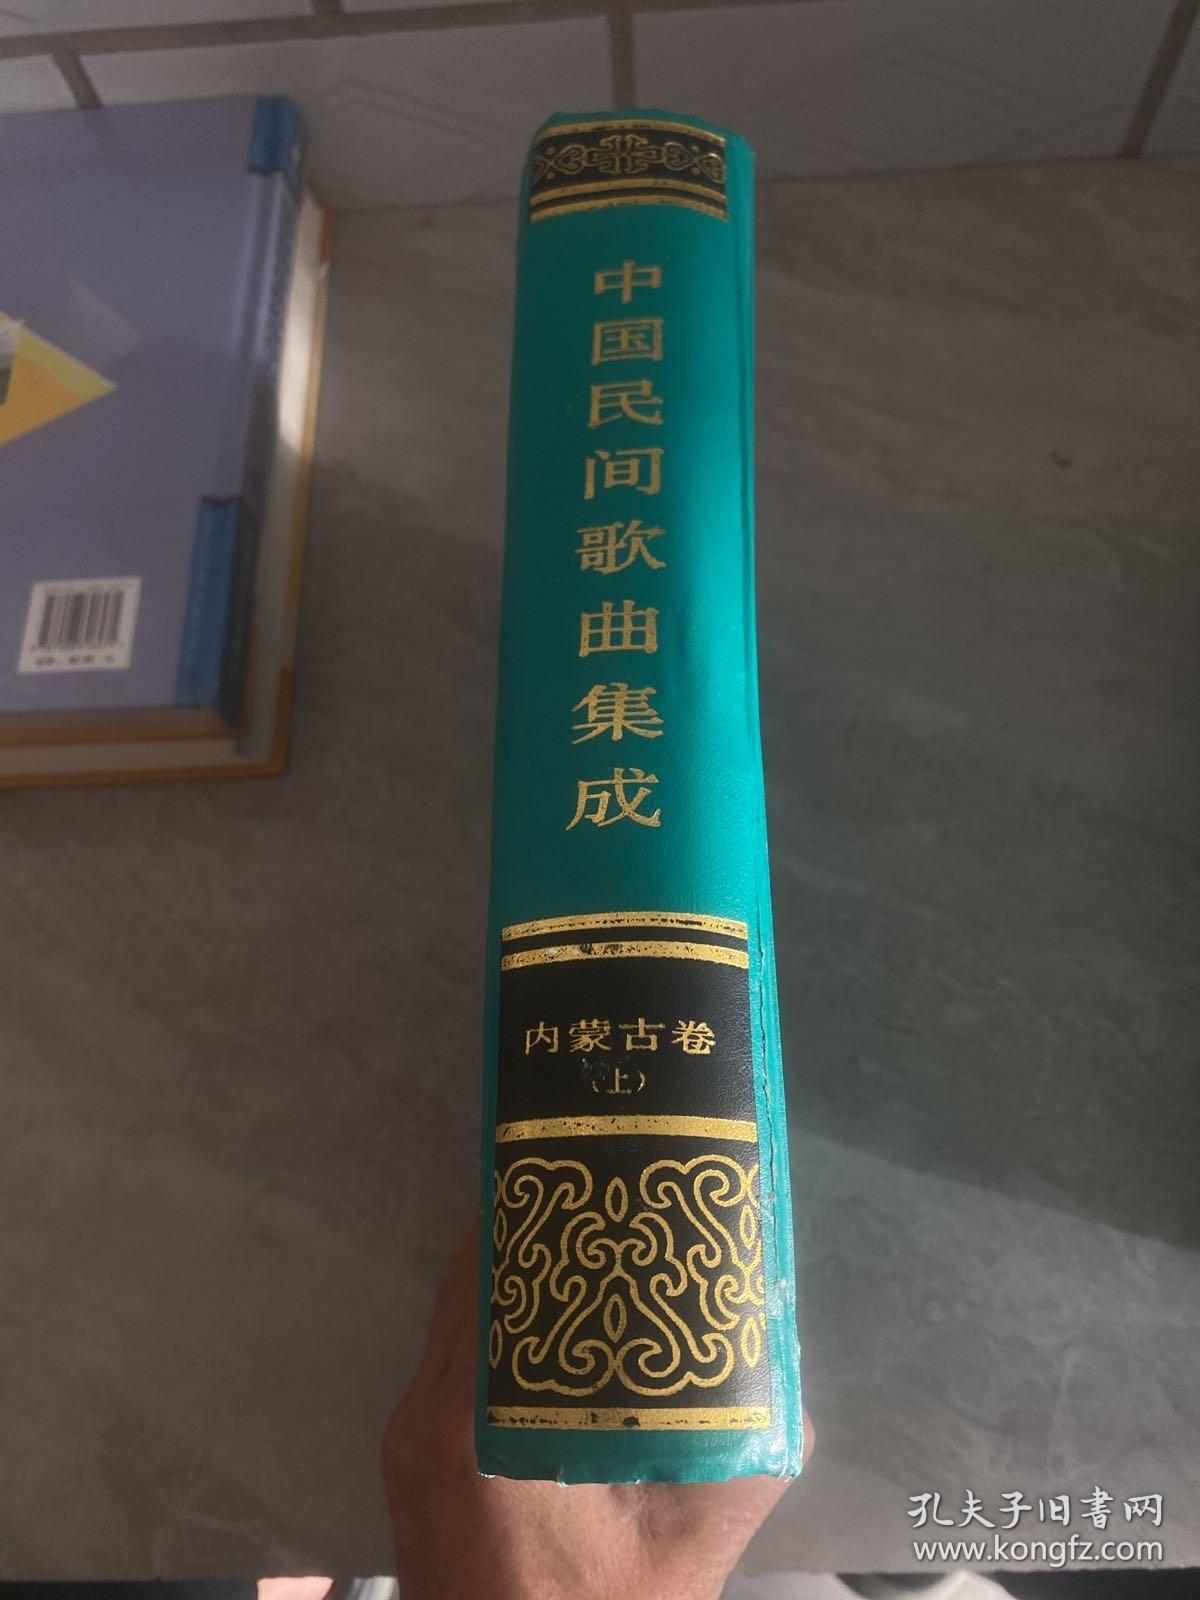 中国民间歌曲集成·内蒙古卷（上）